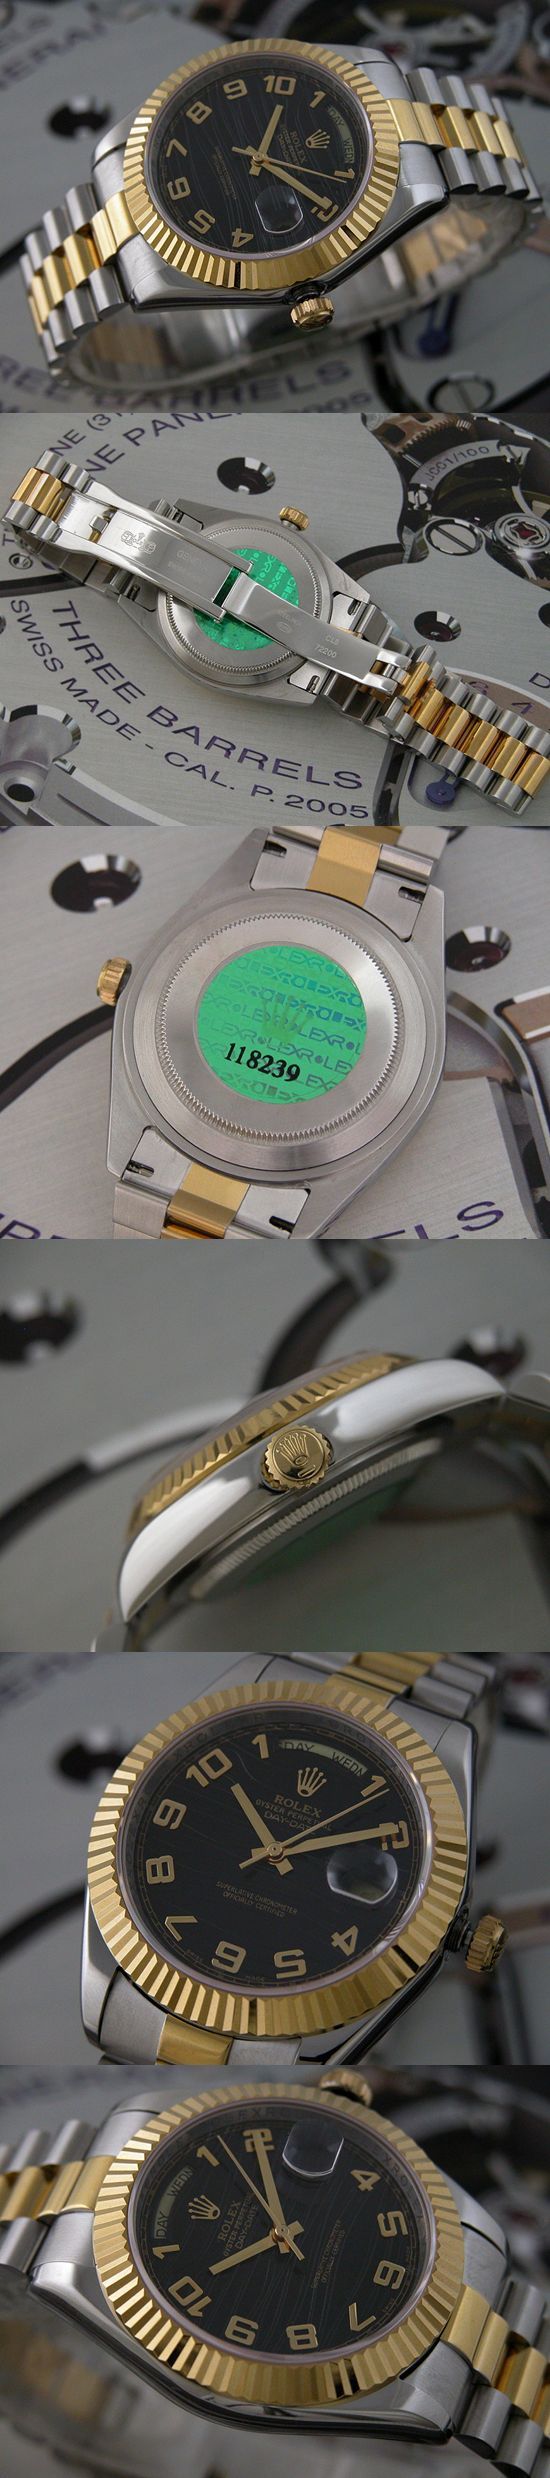 おしゃれなブランド時計がロレックス-デイデイト-ROLEX-118239-121-男性用を提供します.